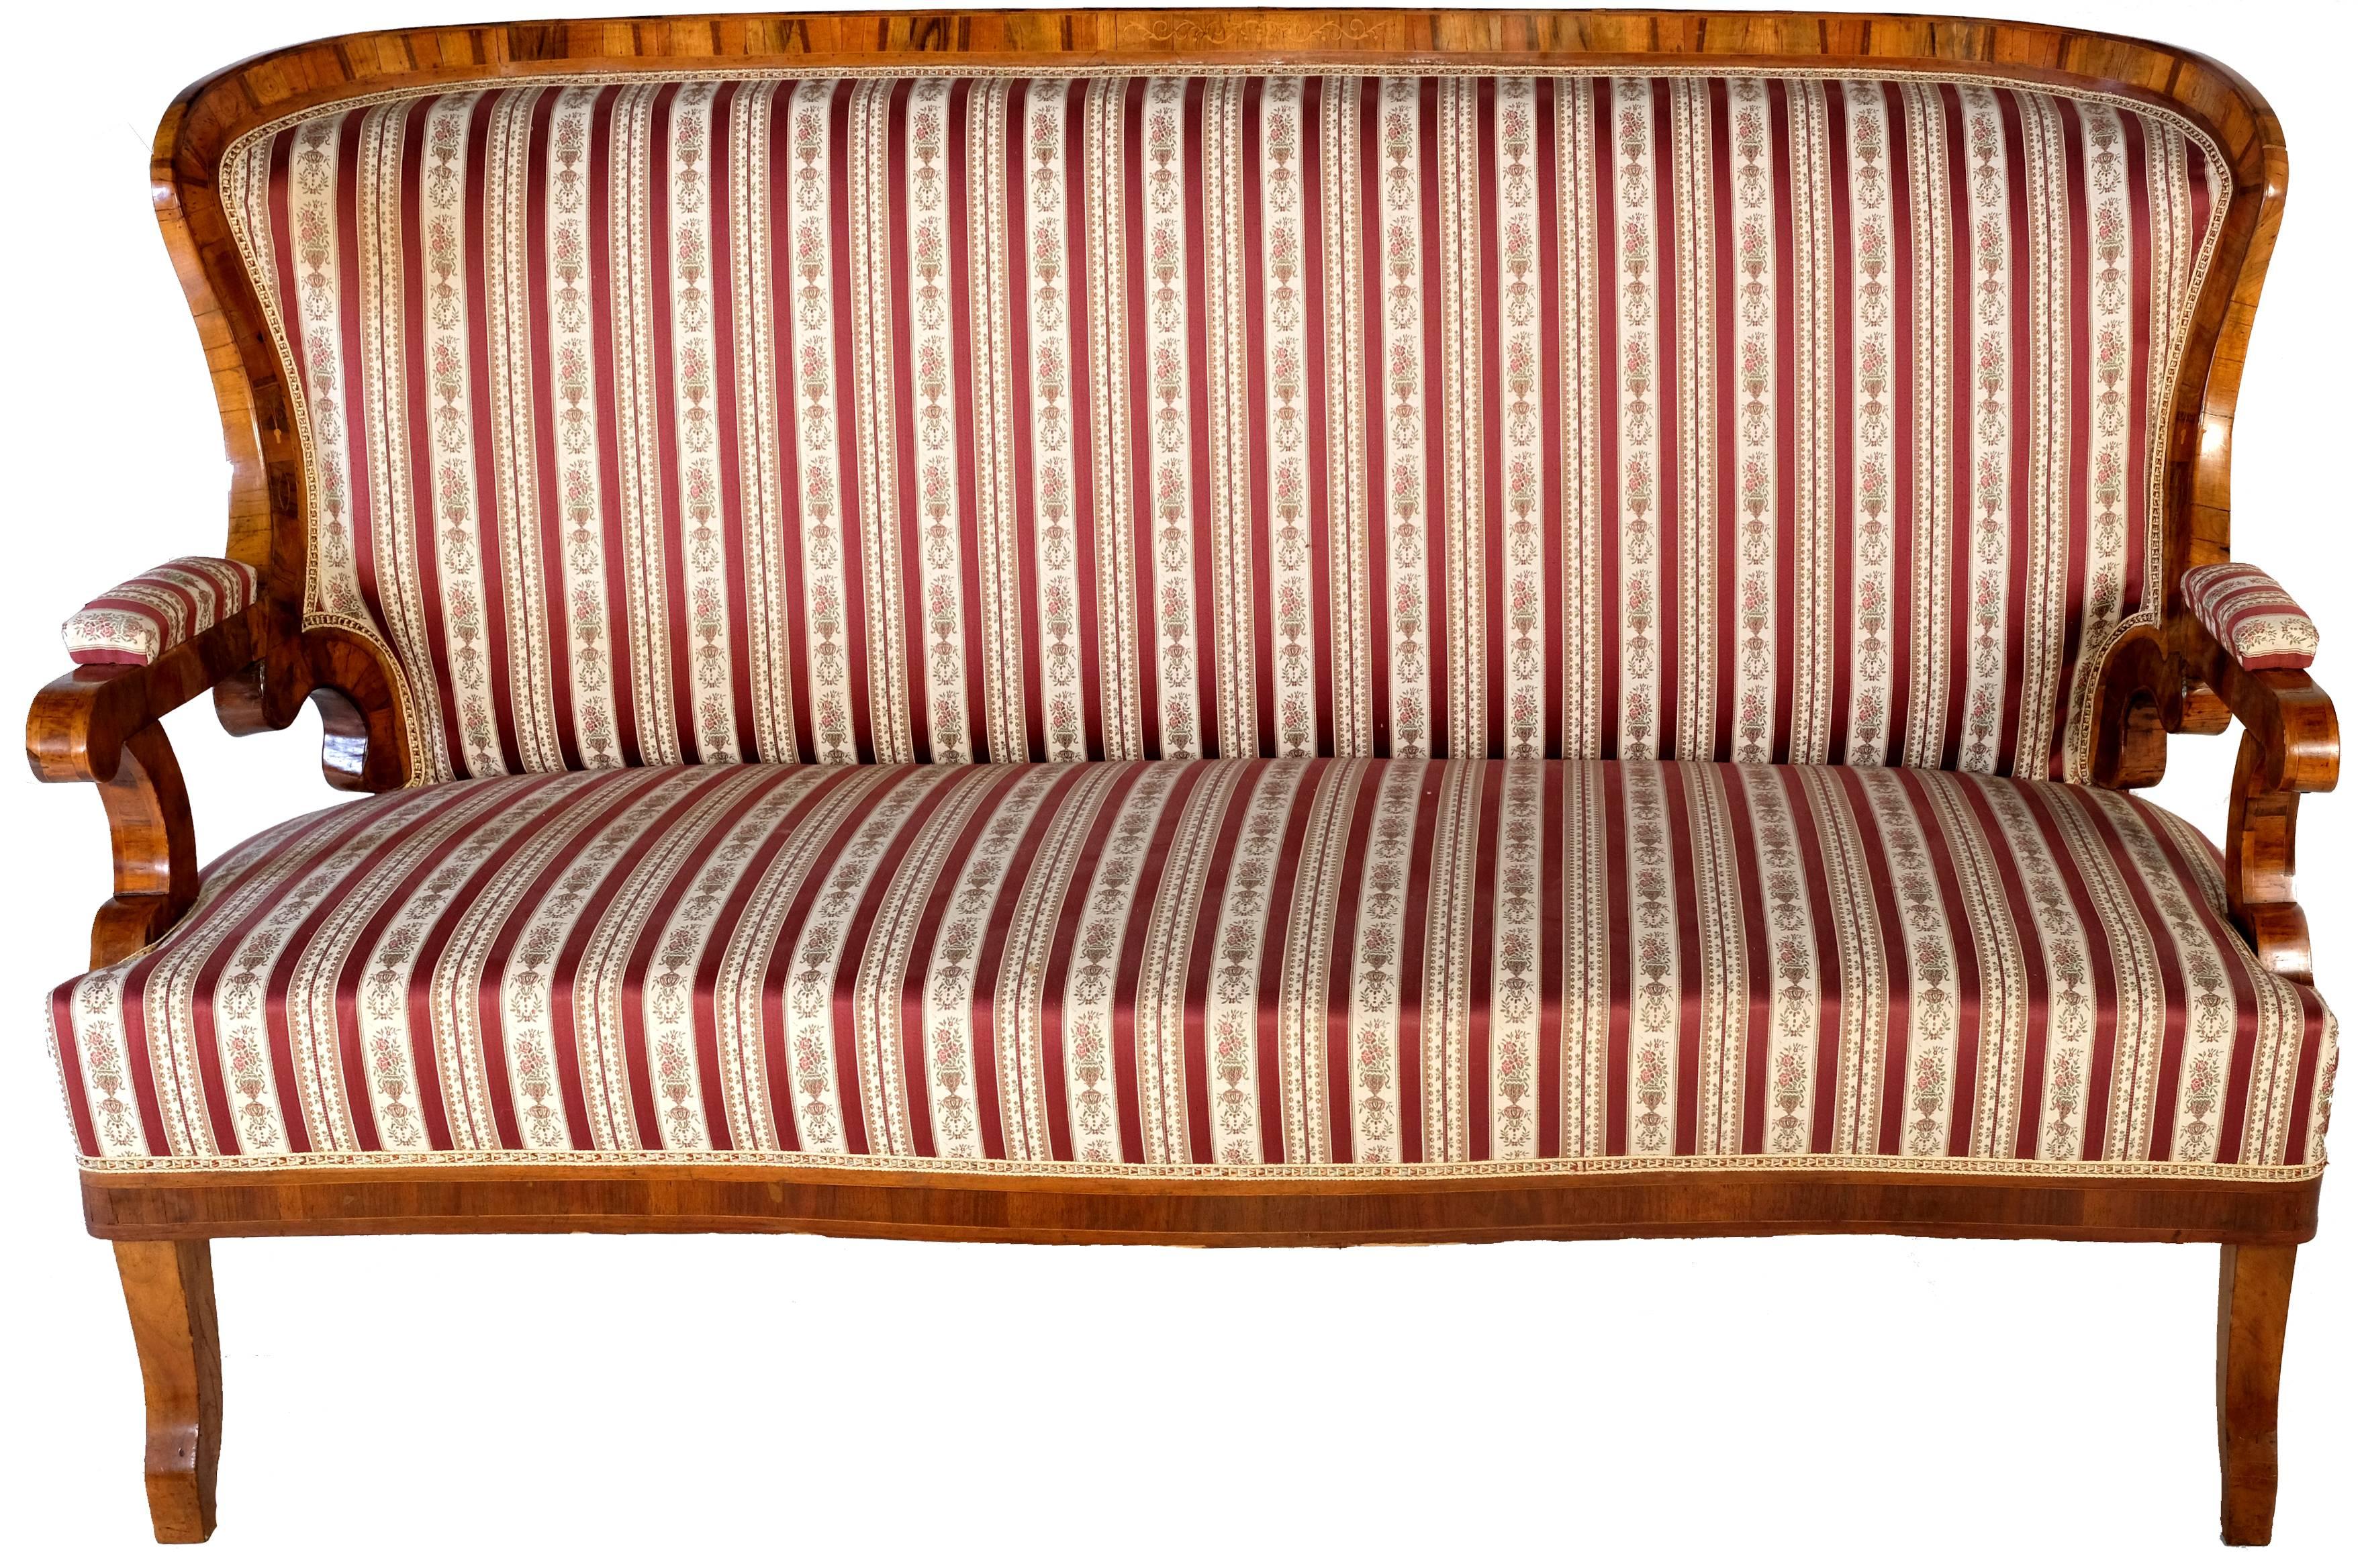 Schöne Biedermeier-Sitzgruppe bestehend aus einem Sofa und zwei Sesseln. Außergewöhnliche Verarbeitung der Hölzer nach den Regeln der damaligen Zeit. 

Maße Sofa: Tiefe 75 cm, Breite 182 cm, Höhe 110 cm.